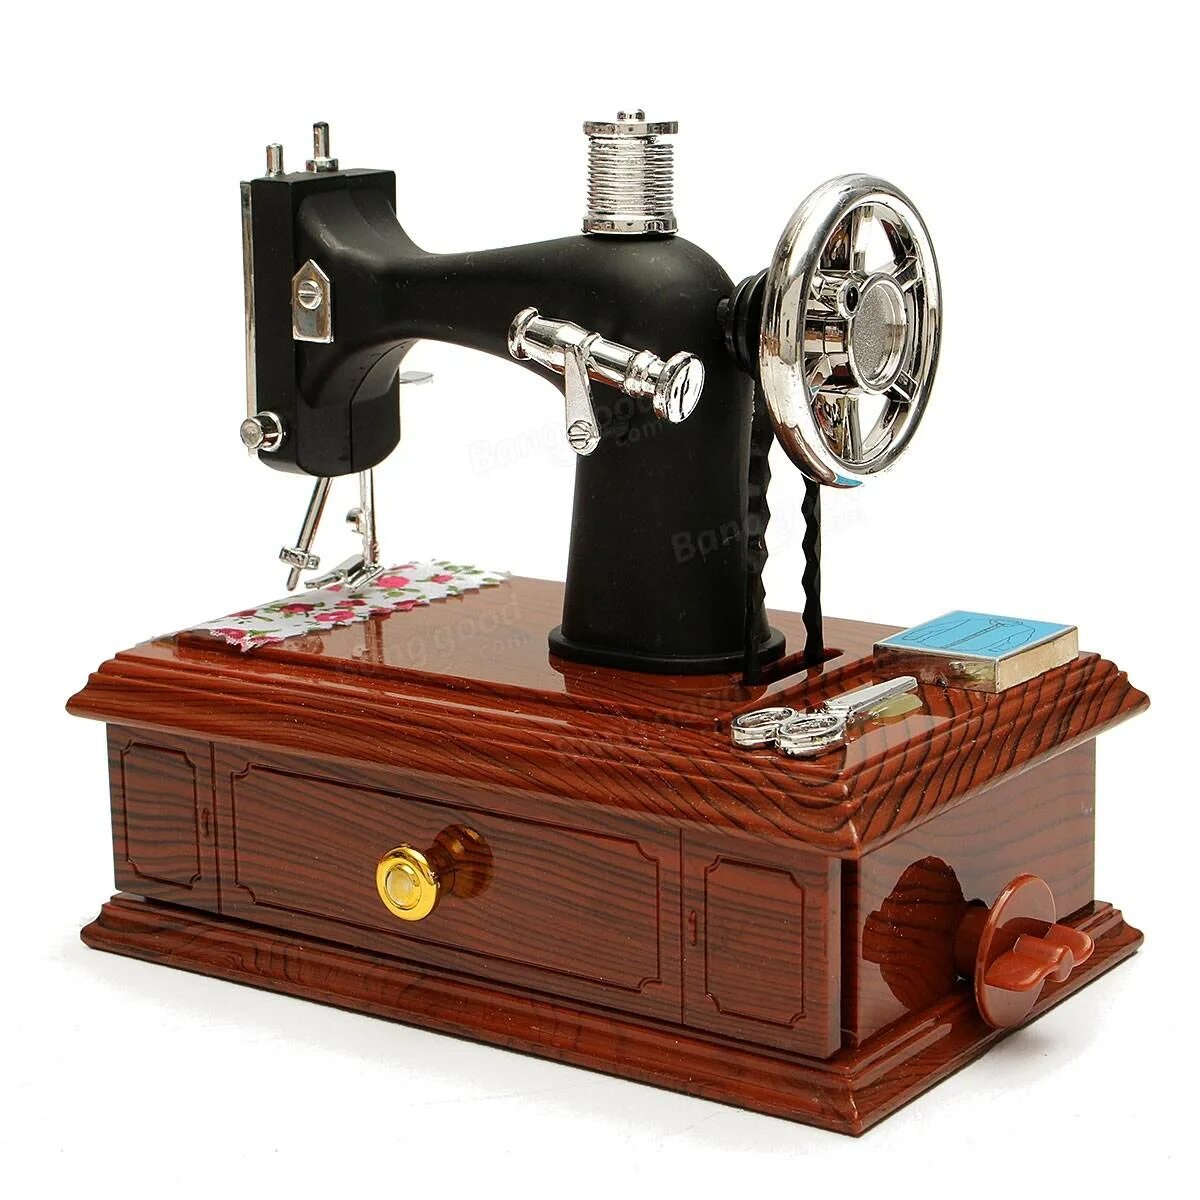 Ручная швейная машинка отзывы. Швейной машинки Вега. Ручная швейная машинка Sewing Machine SJC 1970. Швейная машинка Несси 7575т. Швейная машинка Aho 70.